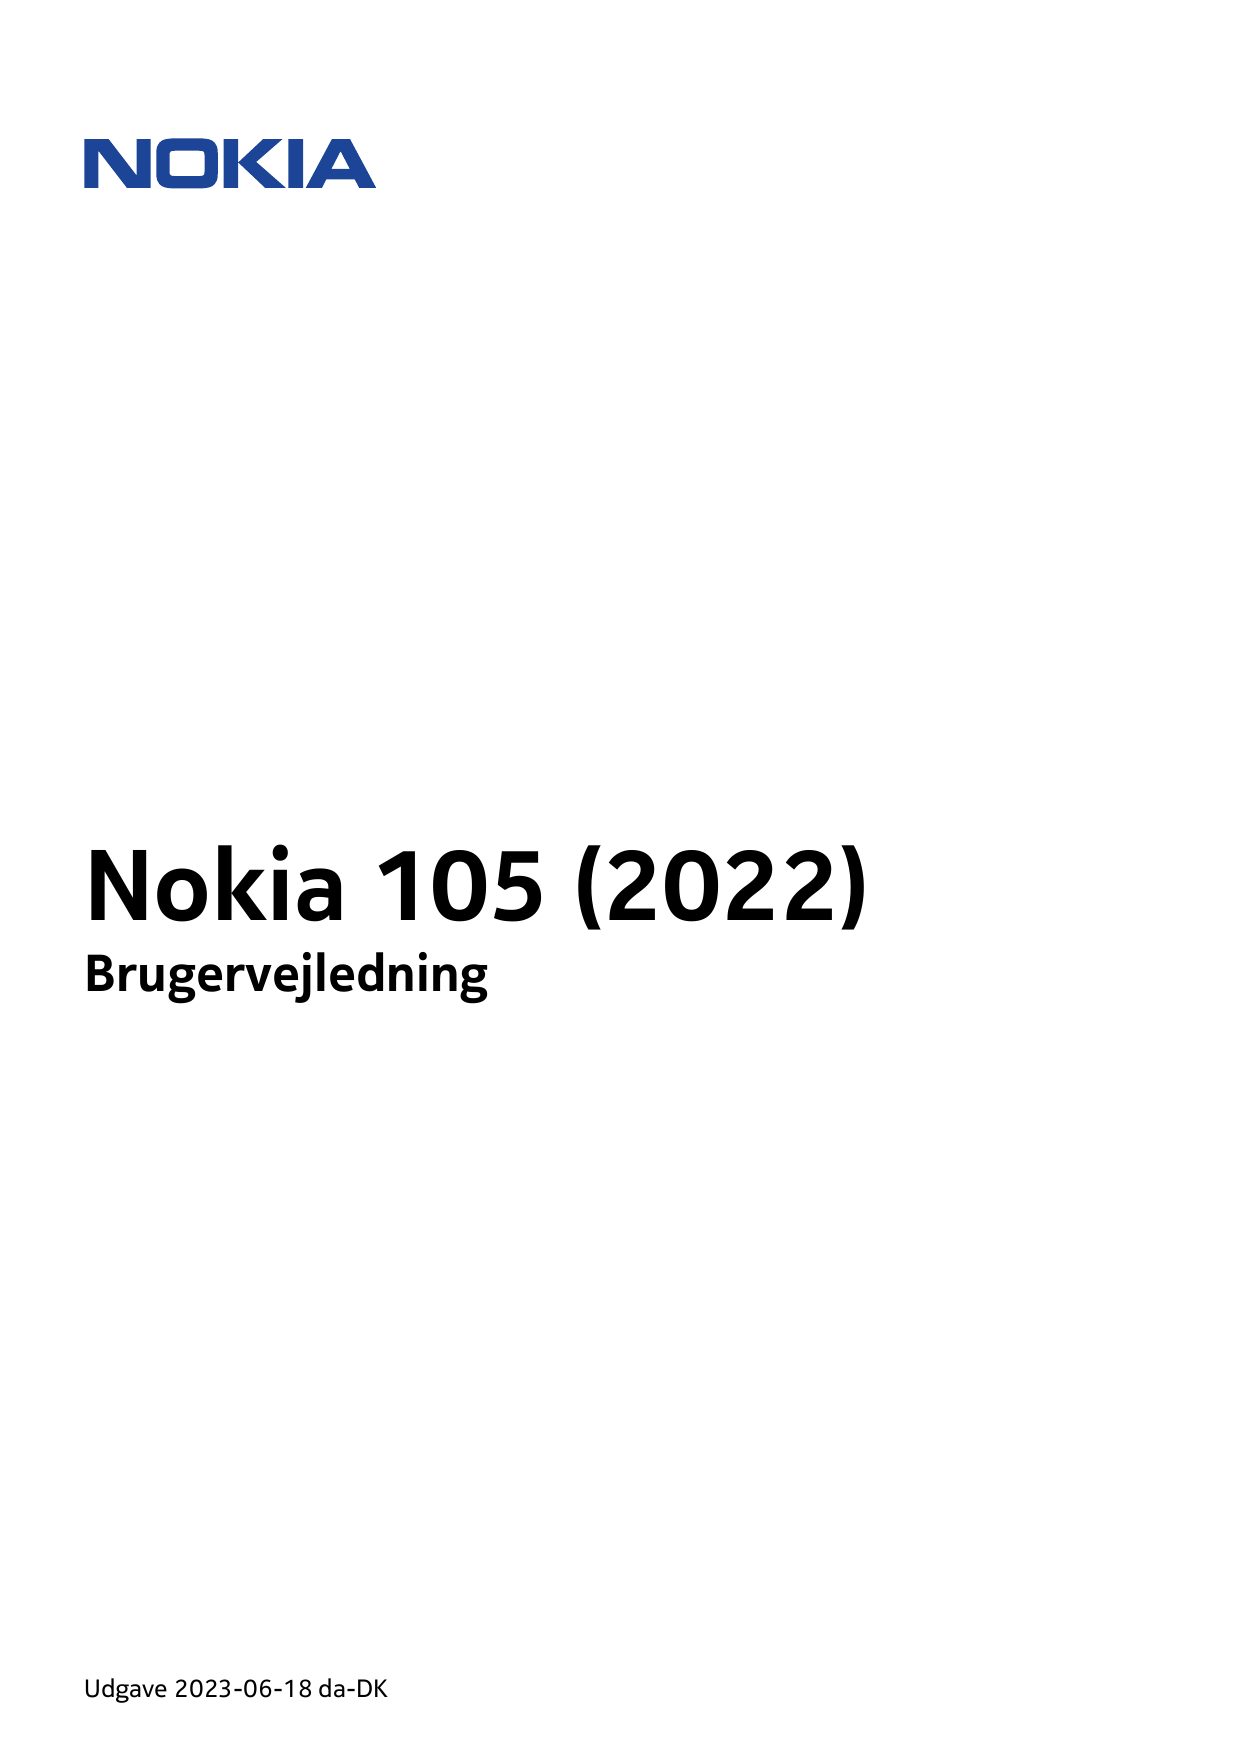 Nokia 105 (2022)BrugervejledningUdgave 2023-06-18 da-DK